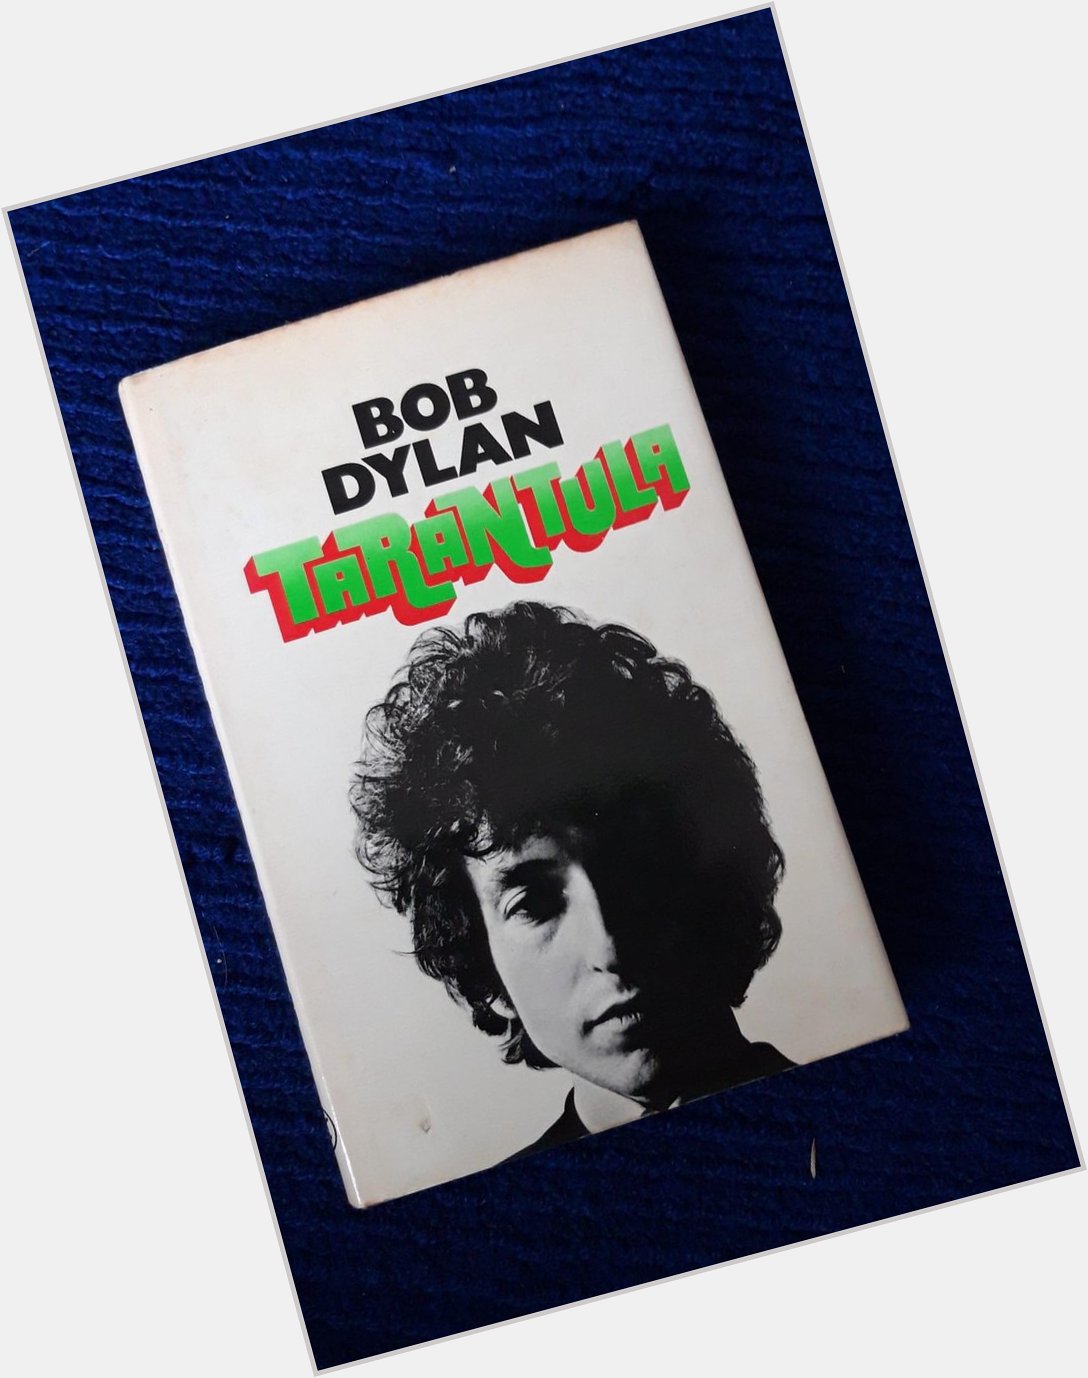 Happy birthday to Bob Dylan 